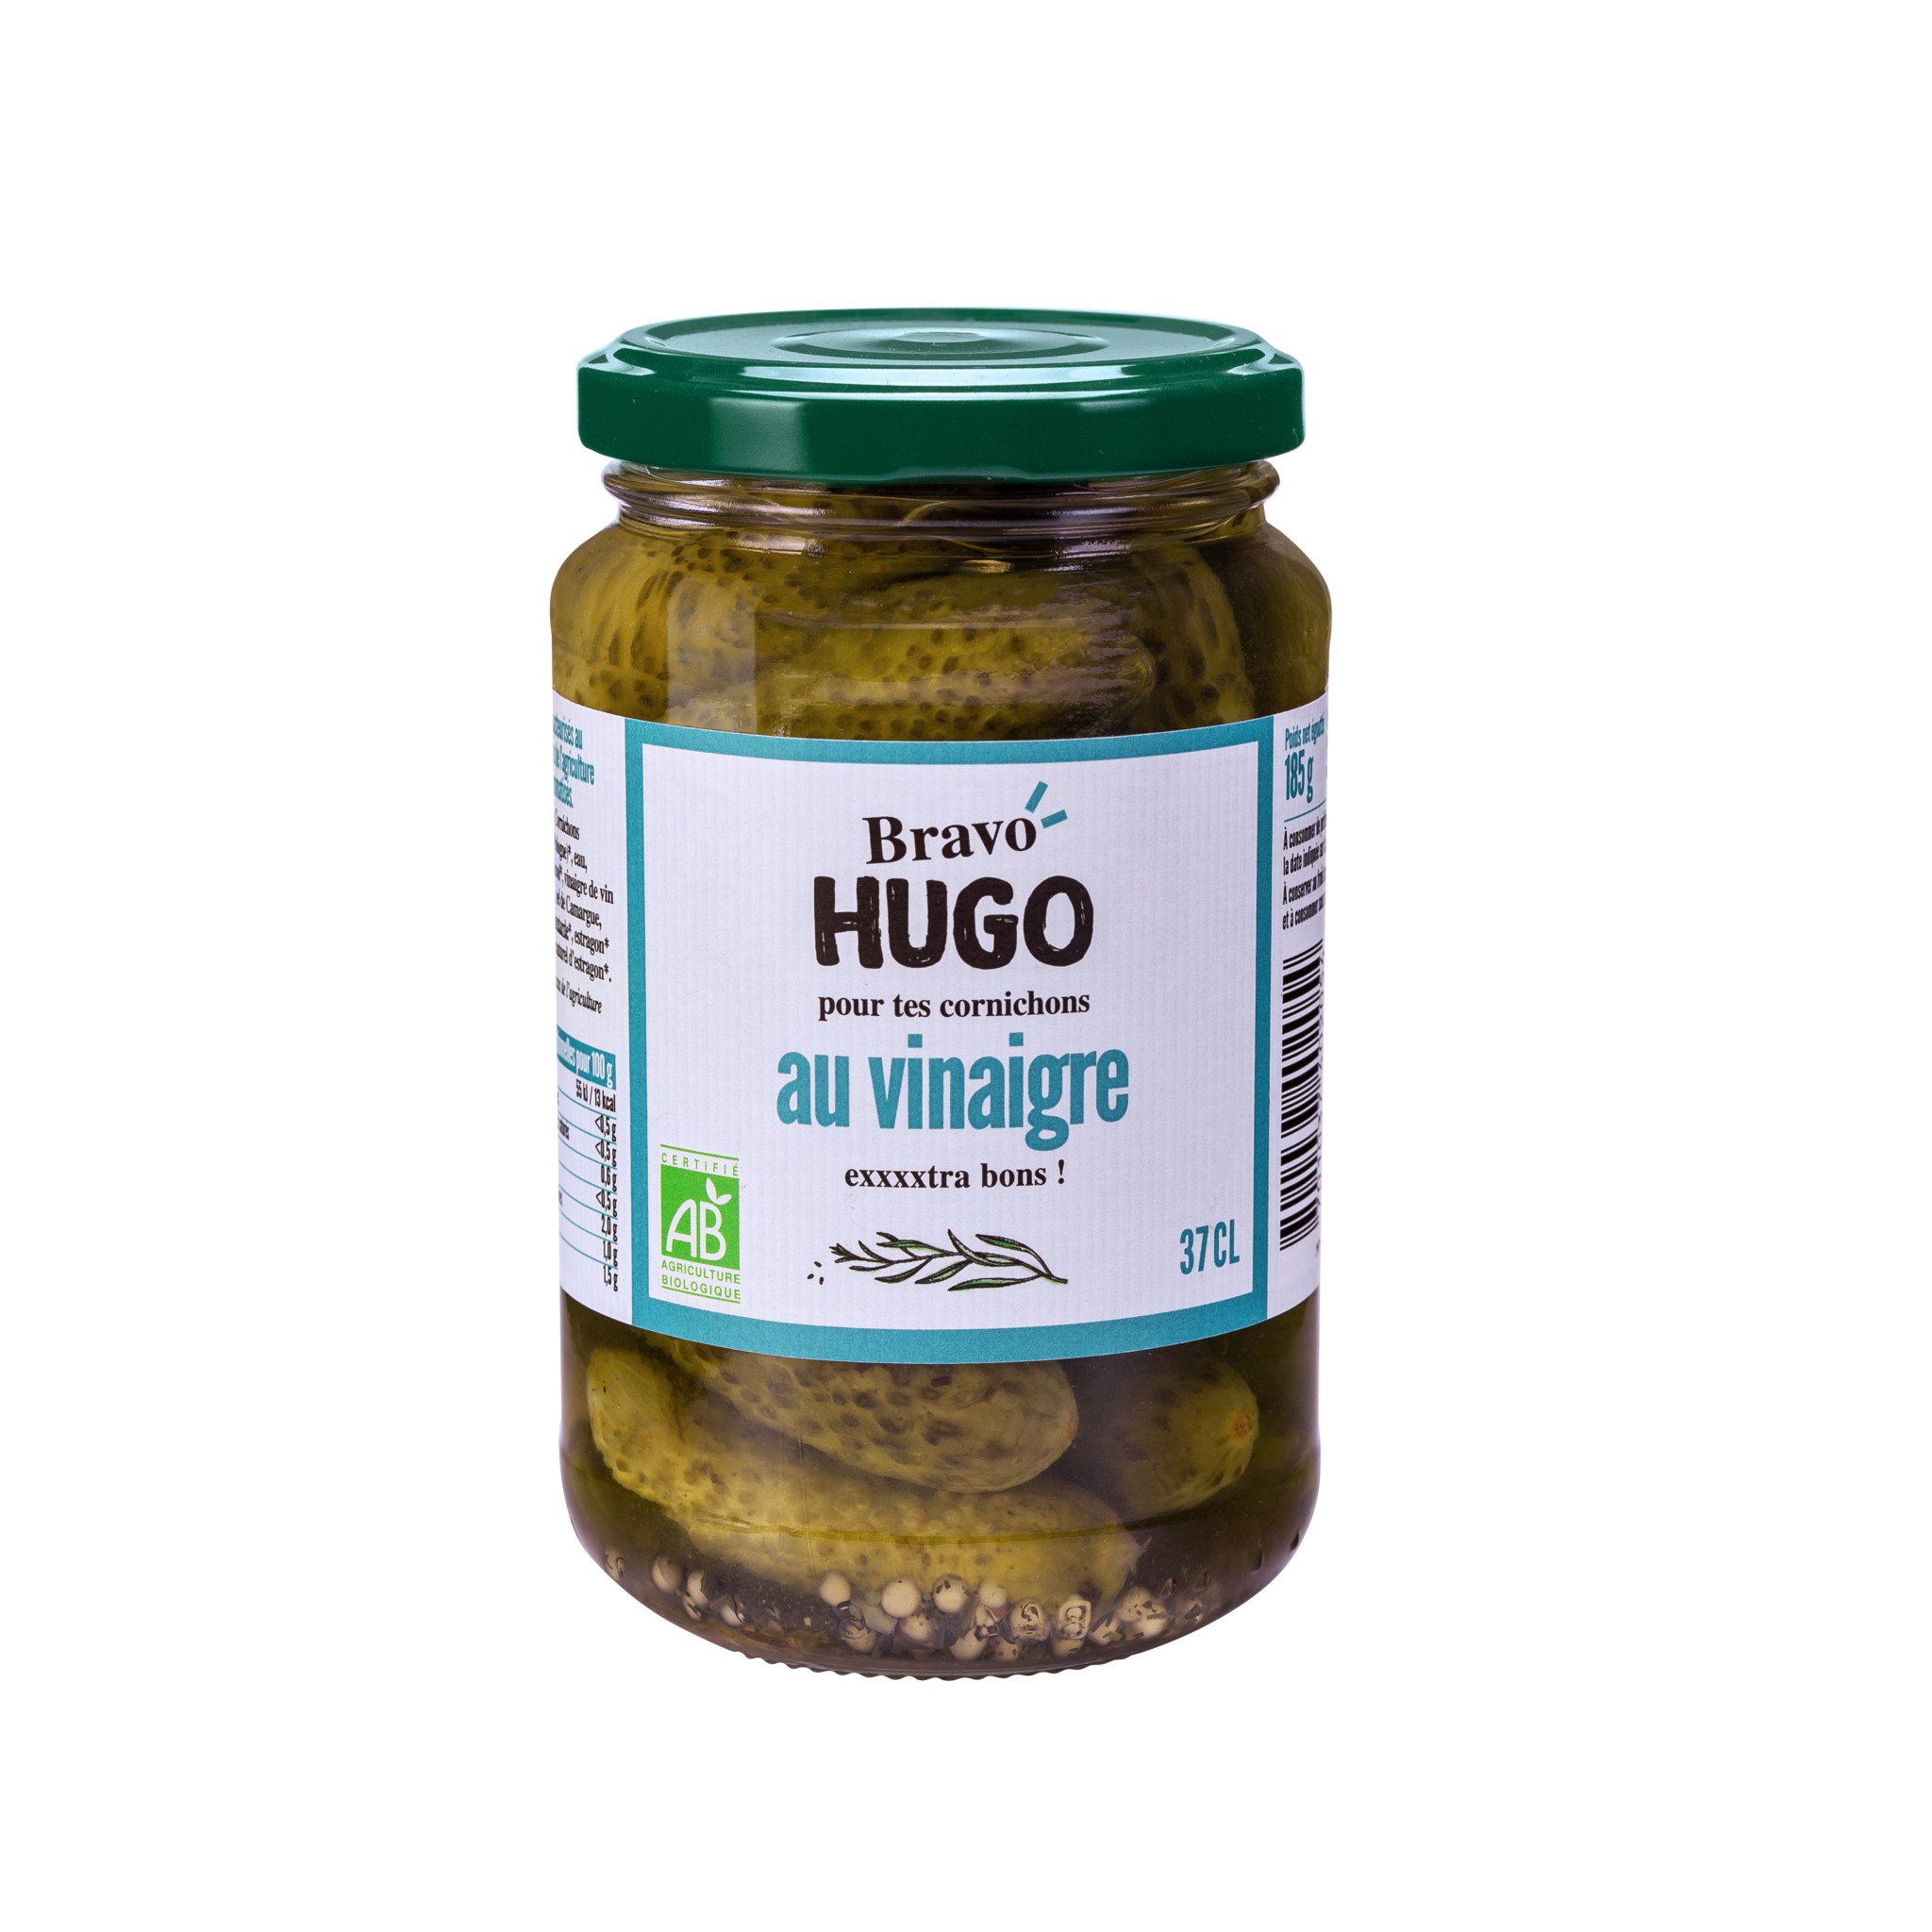 Bravo hugo Vinaigre 37cl HD 2048x2048 1 - Des nouveaux pickles bio et gourmands chez Bravo Hugo